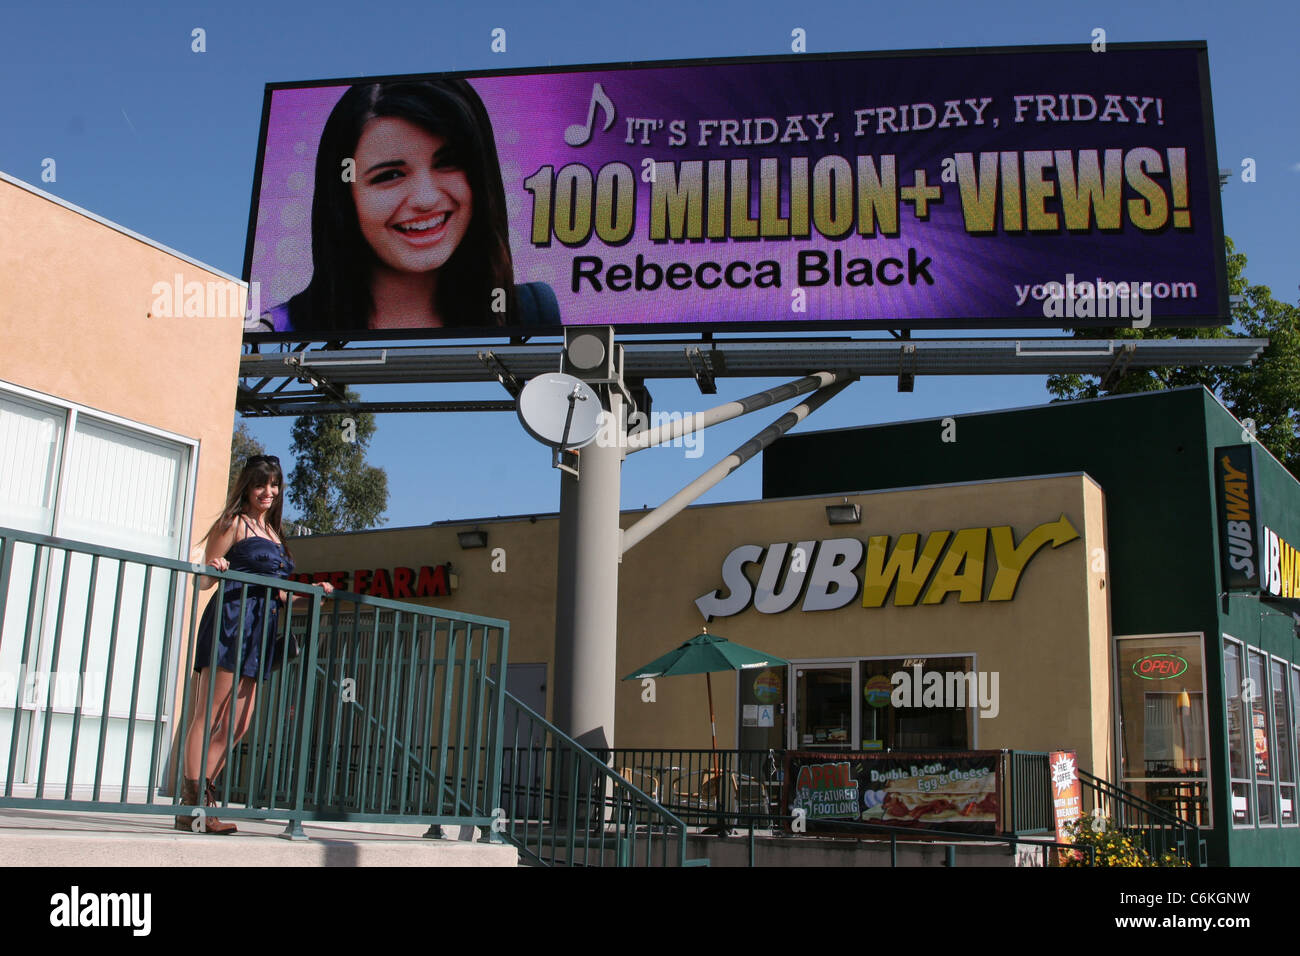 Why Rebecca Black Is 'Proud of Gen Z' – Billboard